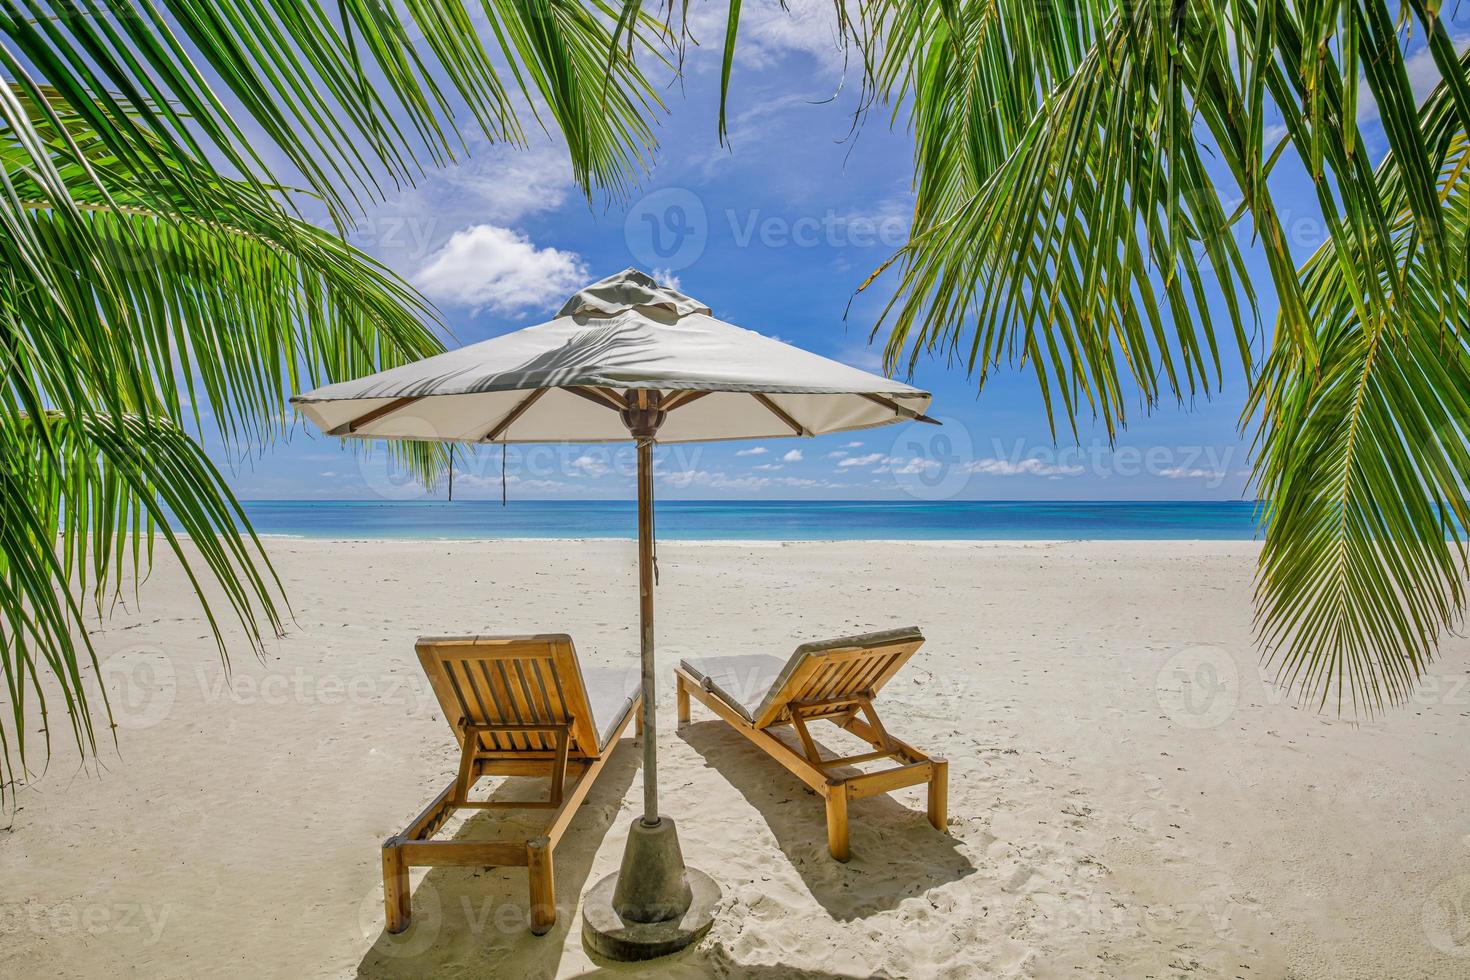 tropicale spiaggia natura come estate paesaggio con sala sedie letti palma albero le foglie e calma mare per spiaggia striscione. lusso viaggio paesaggio, bellissimo destinazione per vacanza o vacanza. spiaggia scena foto